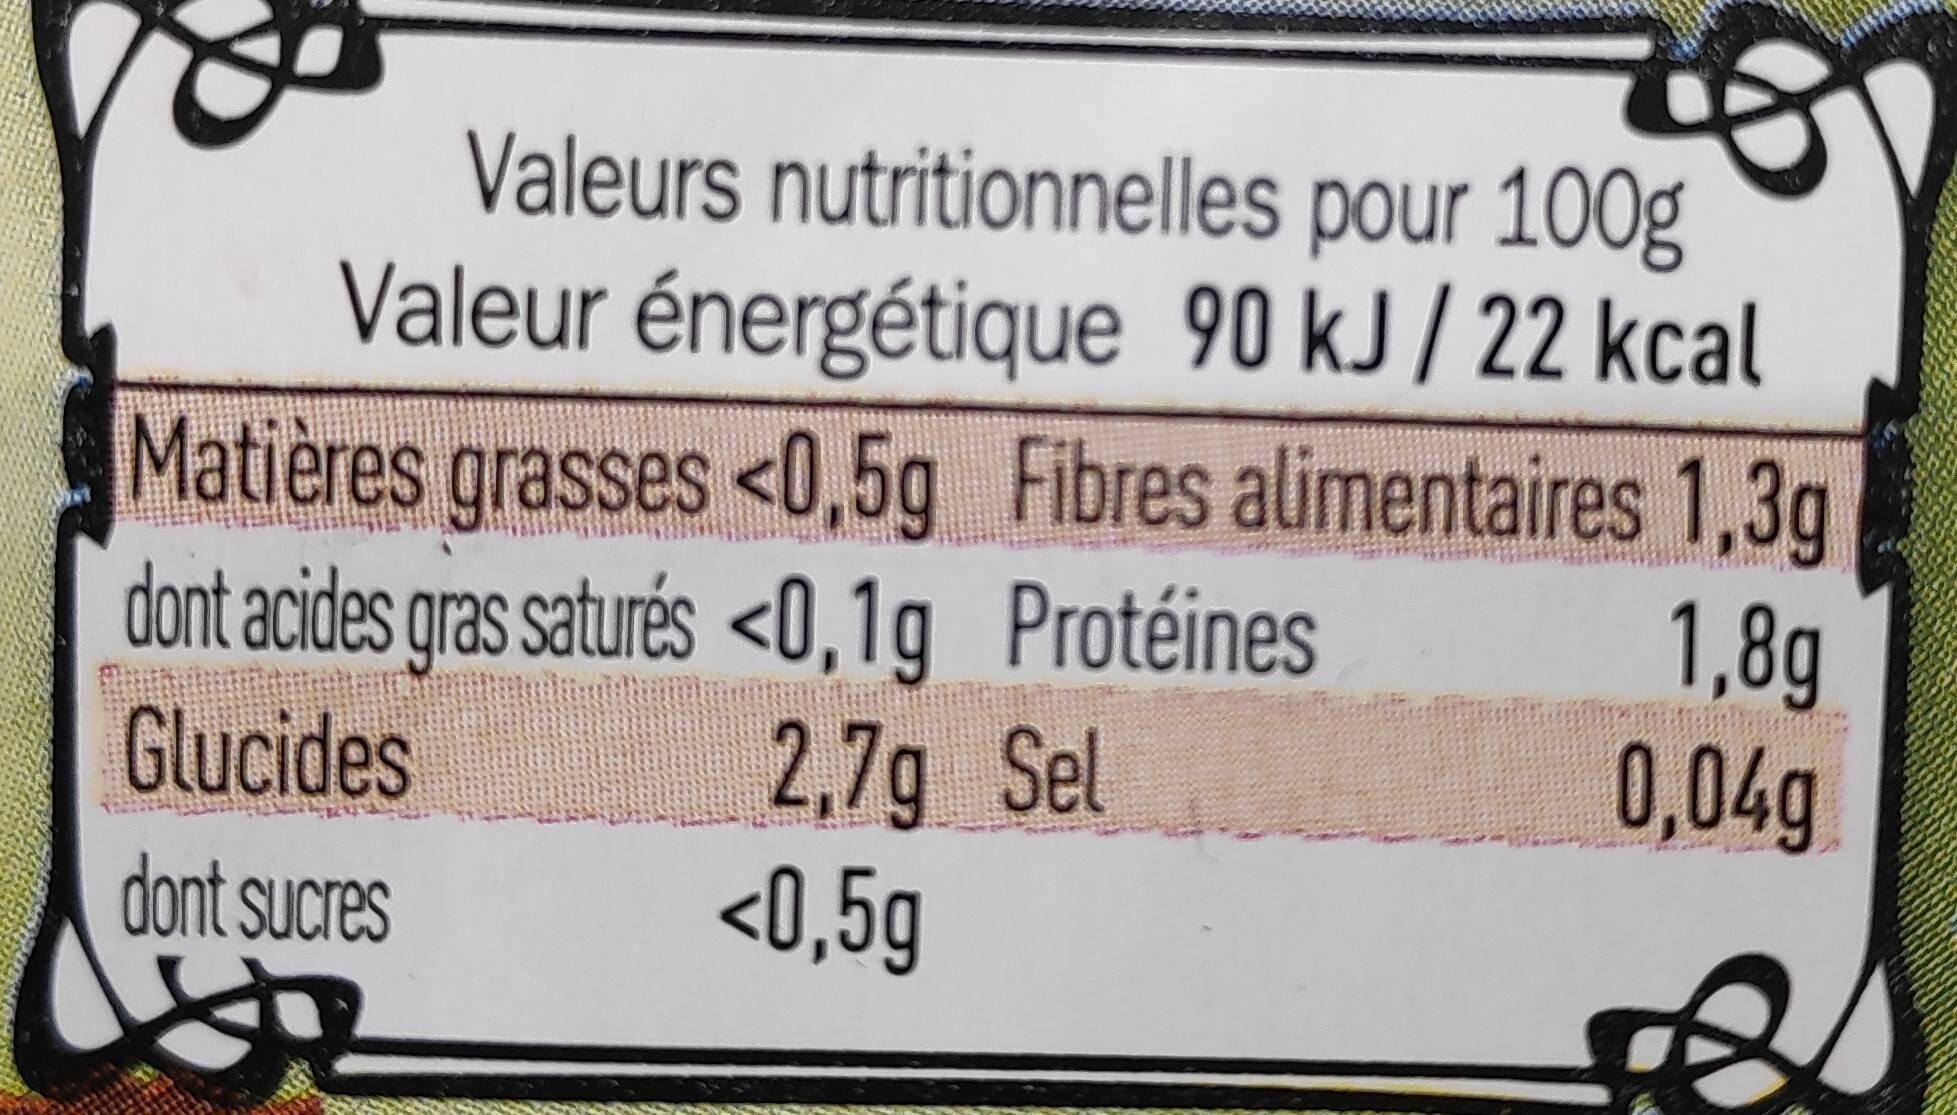 Champignons de Paris - Nutrition facts - fr